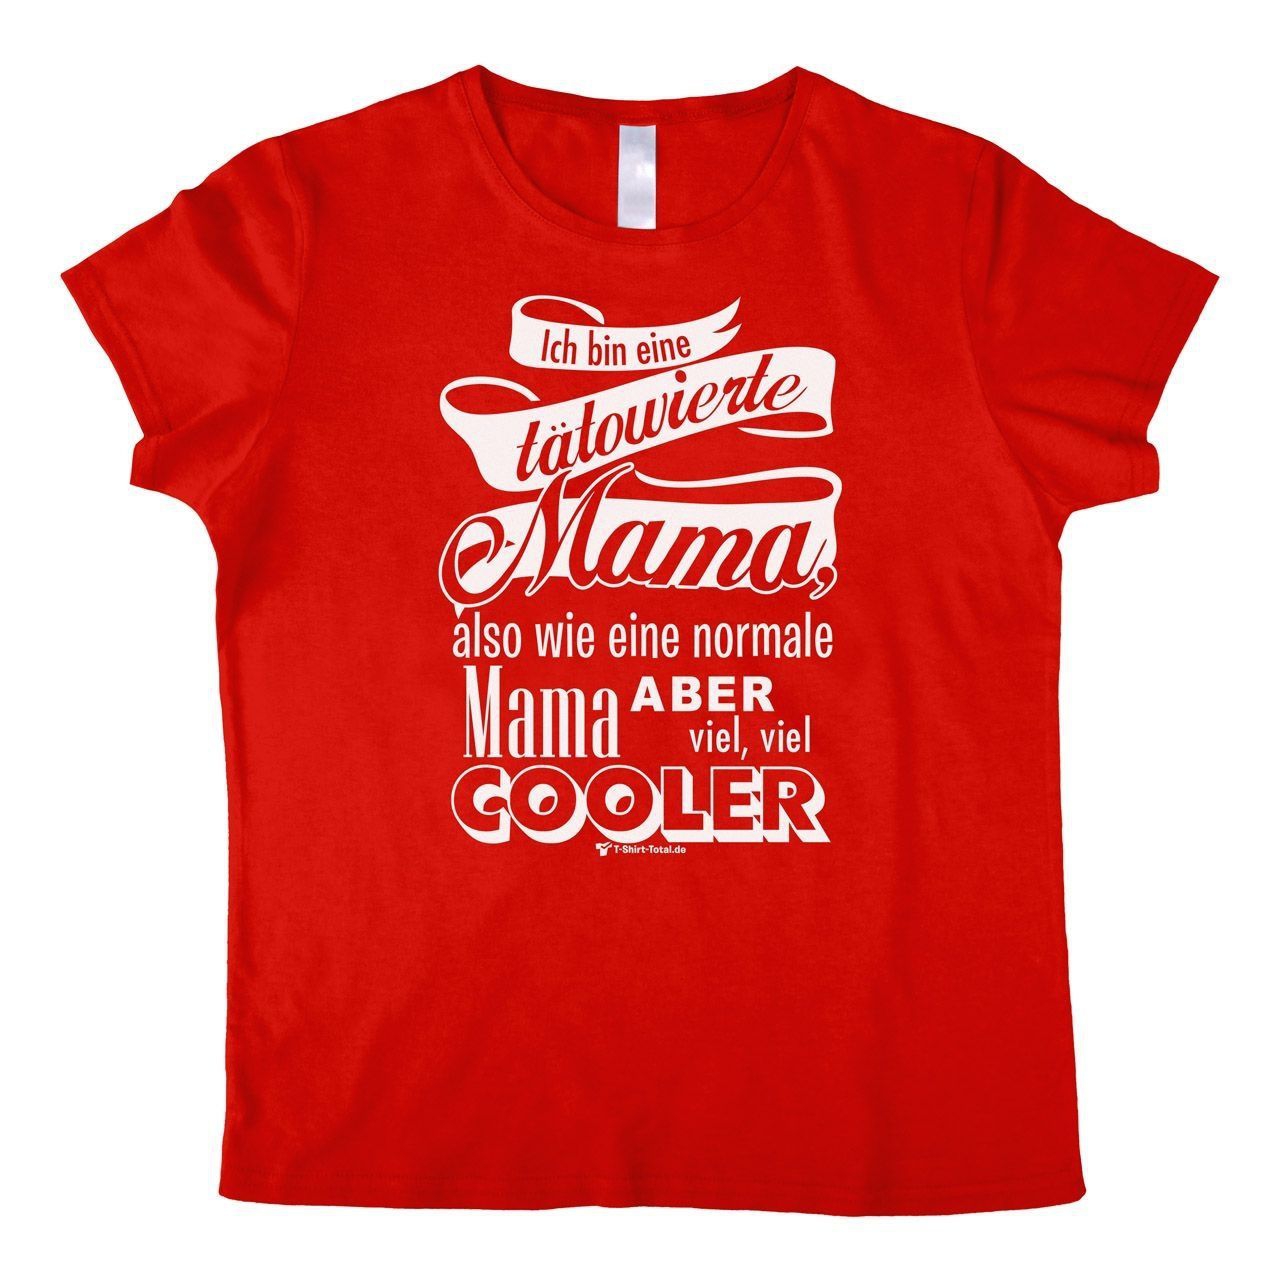 Tätowierte Mama Woman T-Shirt rot Small